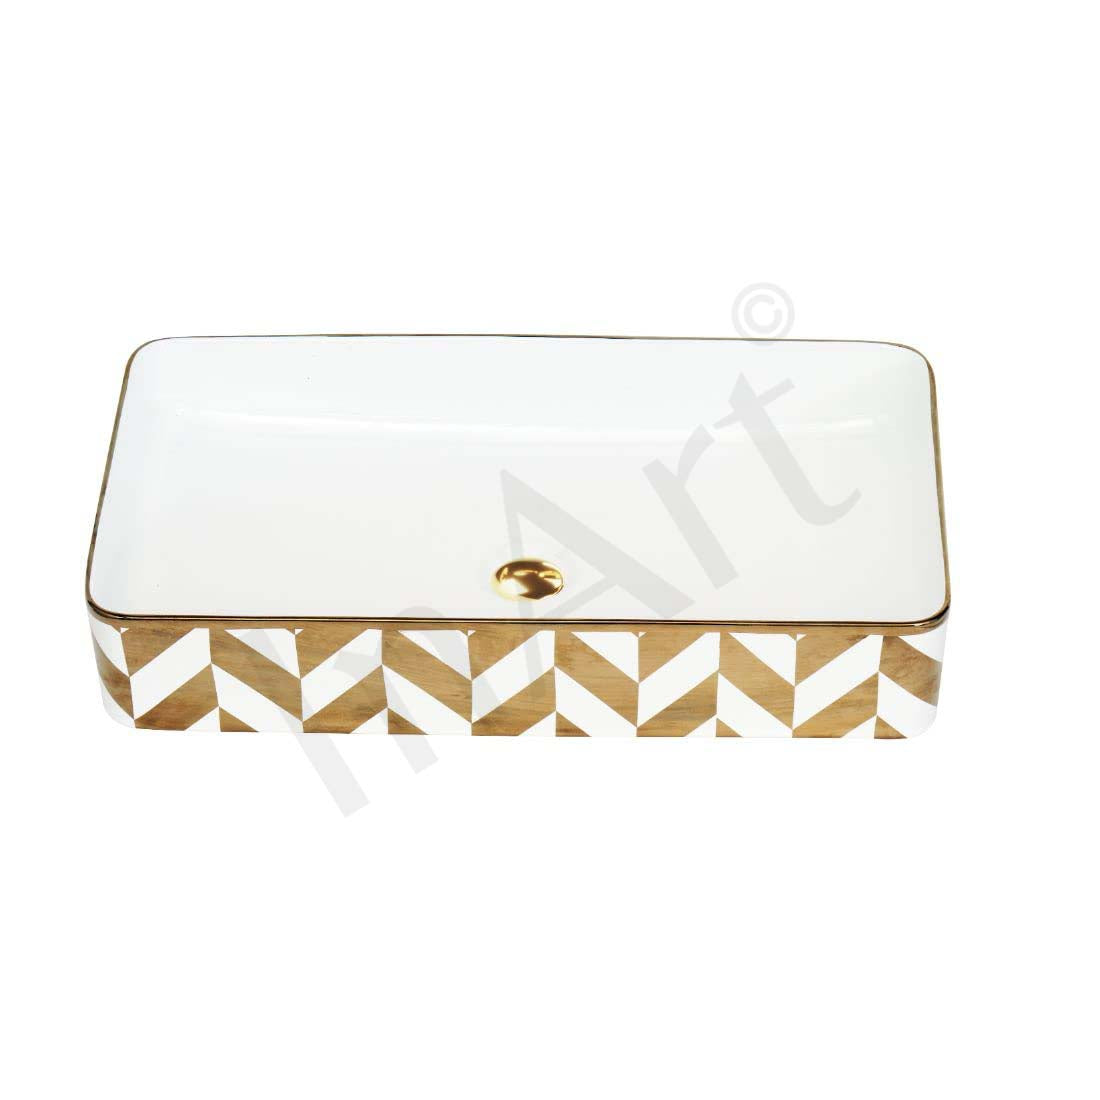 INART Wash Basin Countertop | Tabletop Ceramic Bathroom Sink | Wash Basin Over Counter | Wash Basin For Bathroom 24 x 14 x 4 Inch Gold White - InArt-Studio